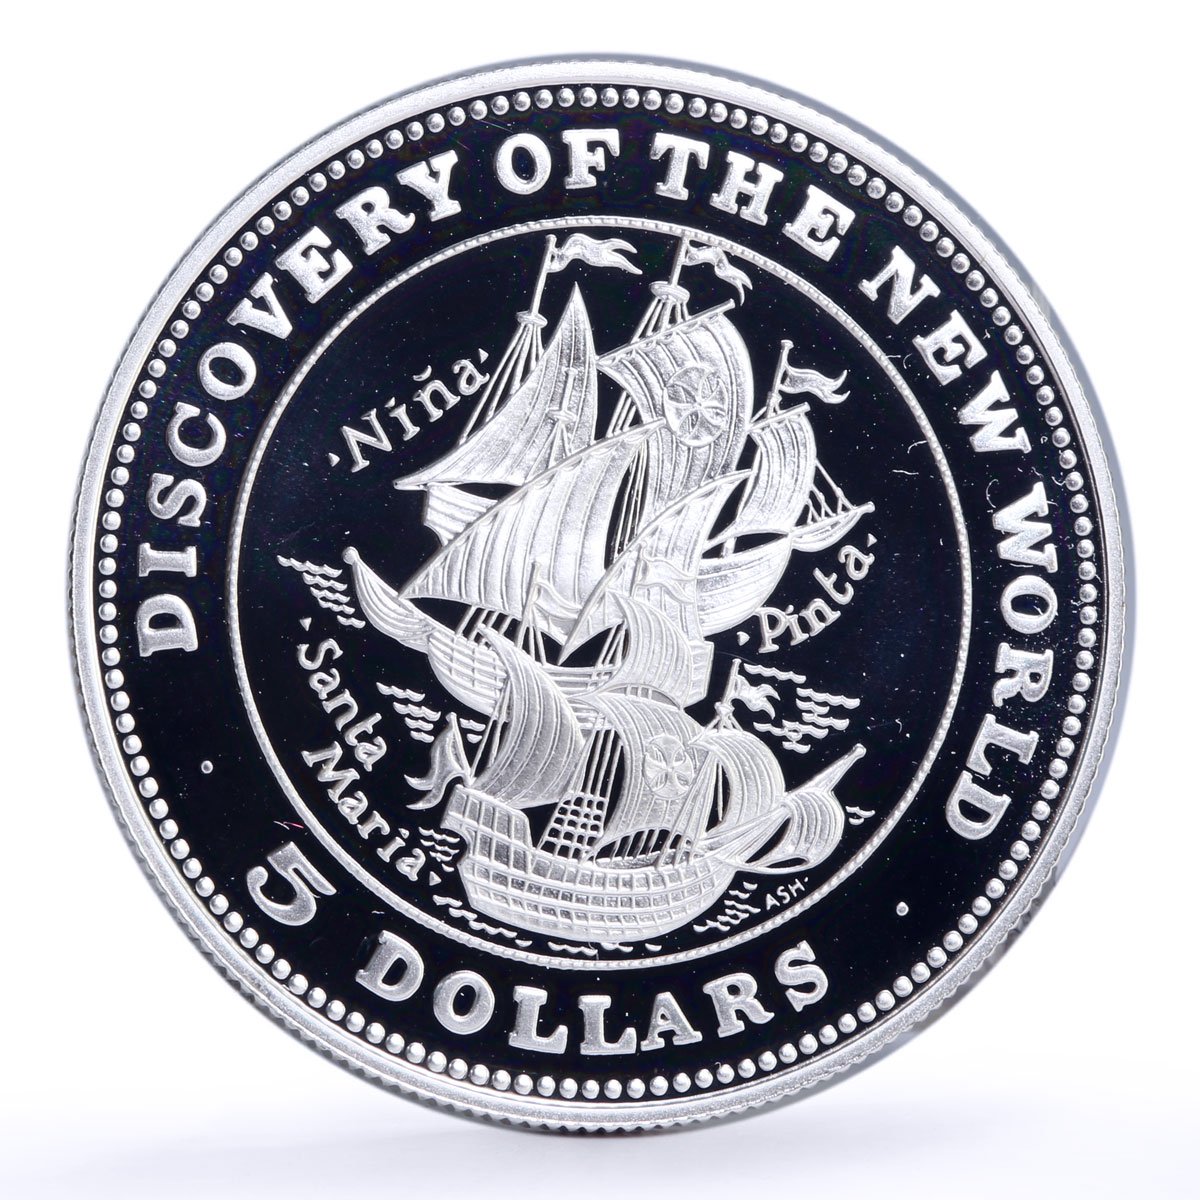 Bahamas 5 dollars Nina Santa Pinta Maria Ships Clippers proof silver coin 1992